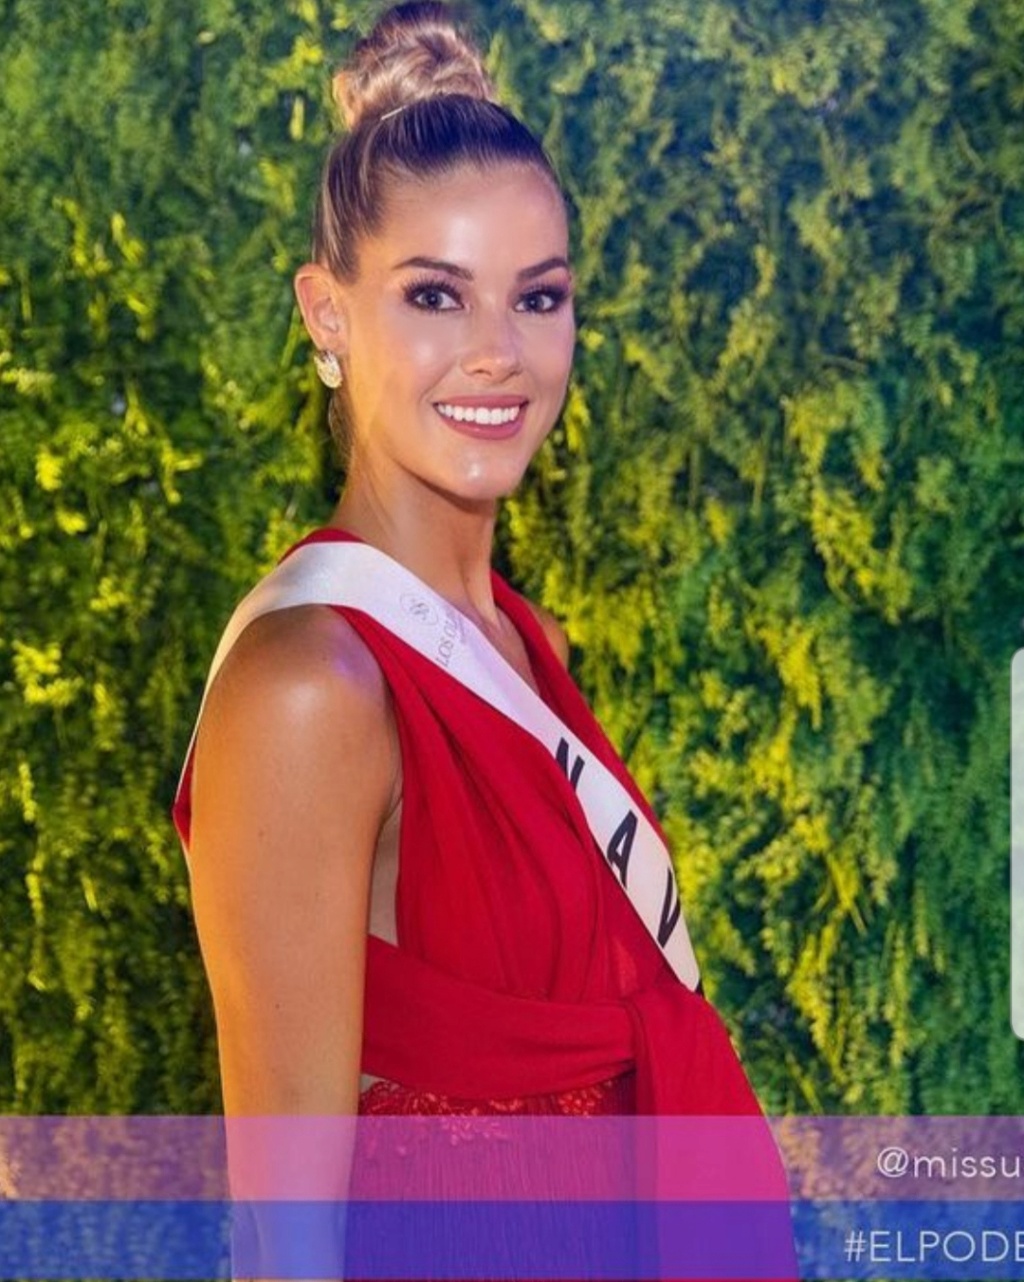 Conoce a las candidatas oficiales de Miss Universe Spain 2022. final: 10 sep. - Página 5 Airbru27